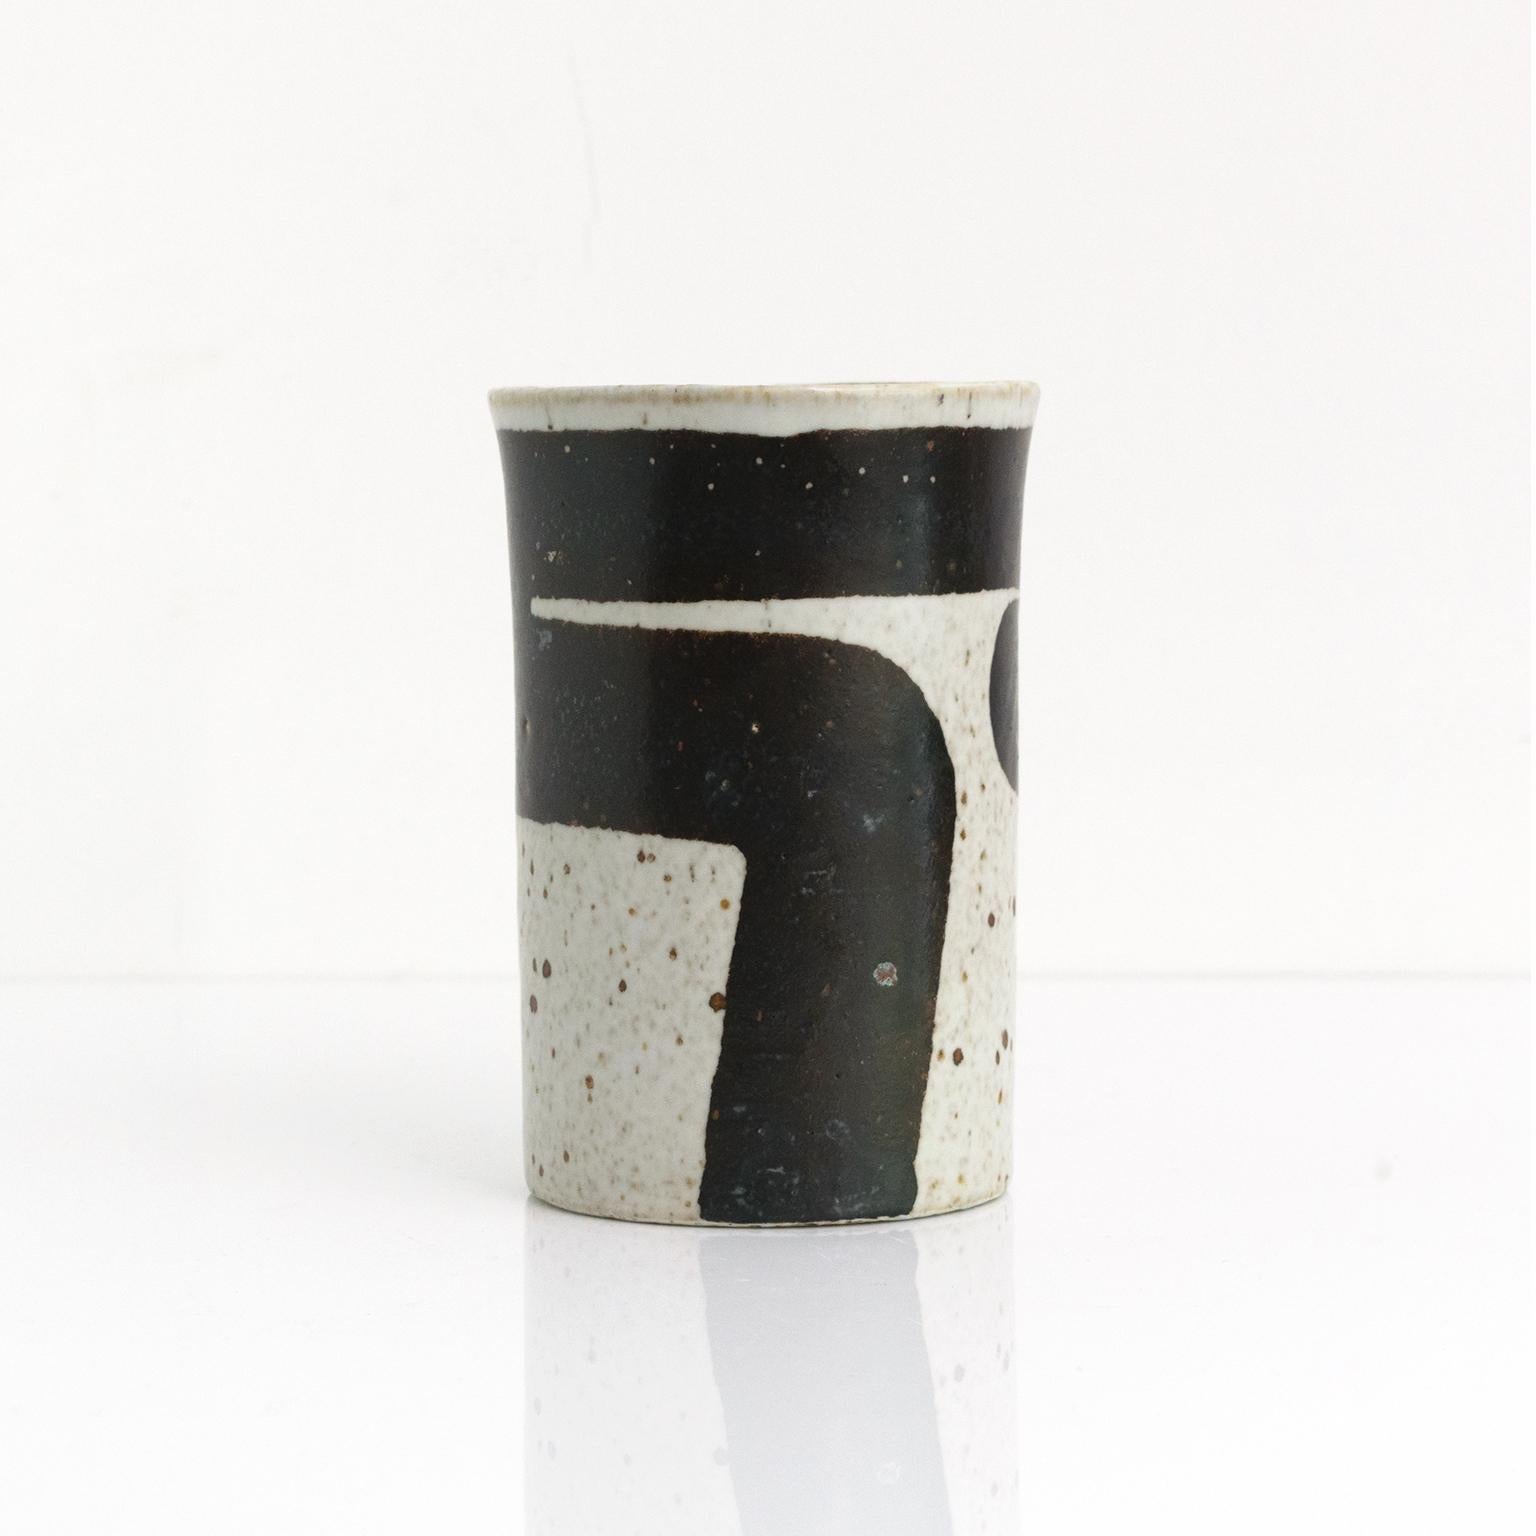 Inger Persson entwarf diese kühne grafische Keramik-Studio-Vase in den 1960er Jahren für Rorstrand, Schweden. Die Vase hat eine leicht quadratische Form mit einem dunkelbraunen bis schwarzen handgemalten Band auf weißem Grund. 

Maße: Höhe 6,25